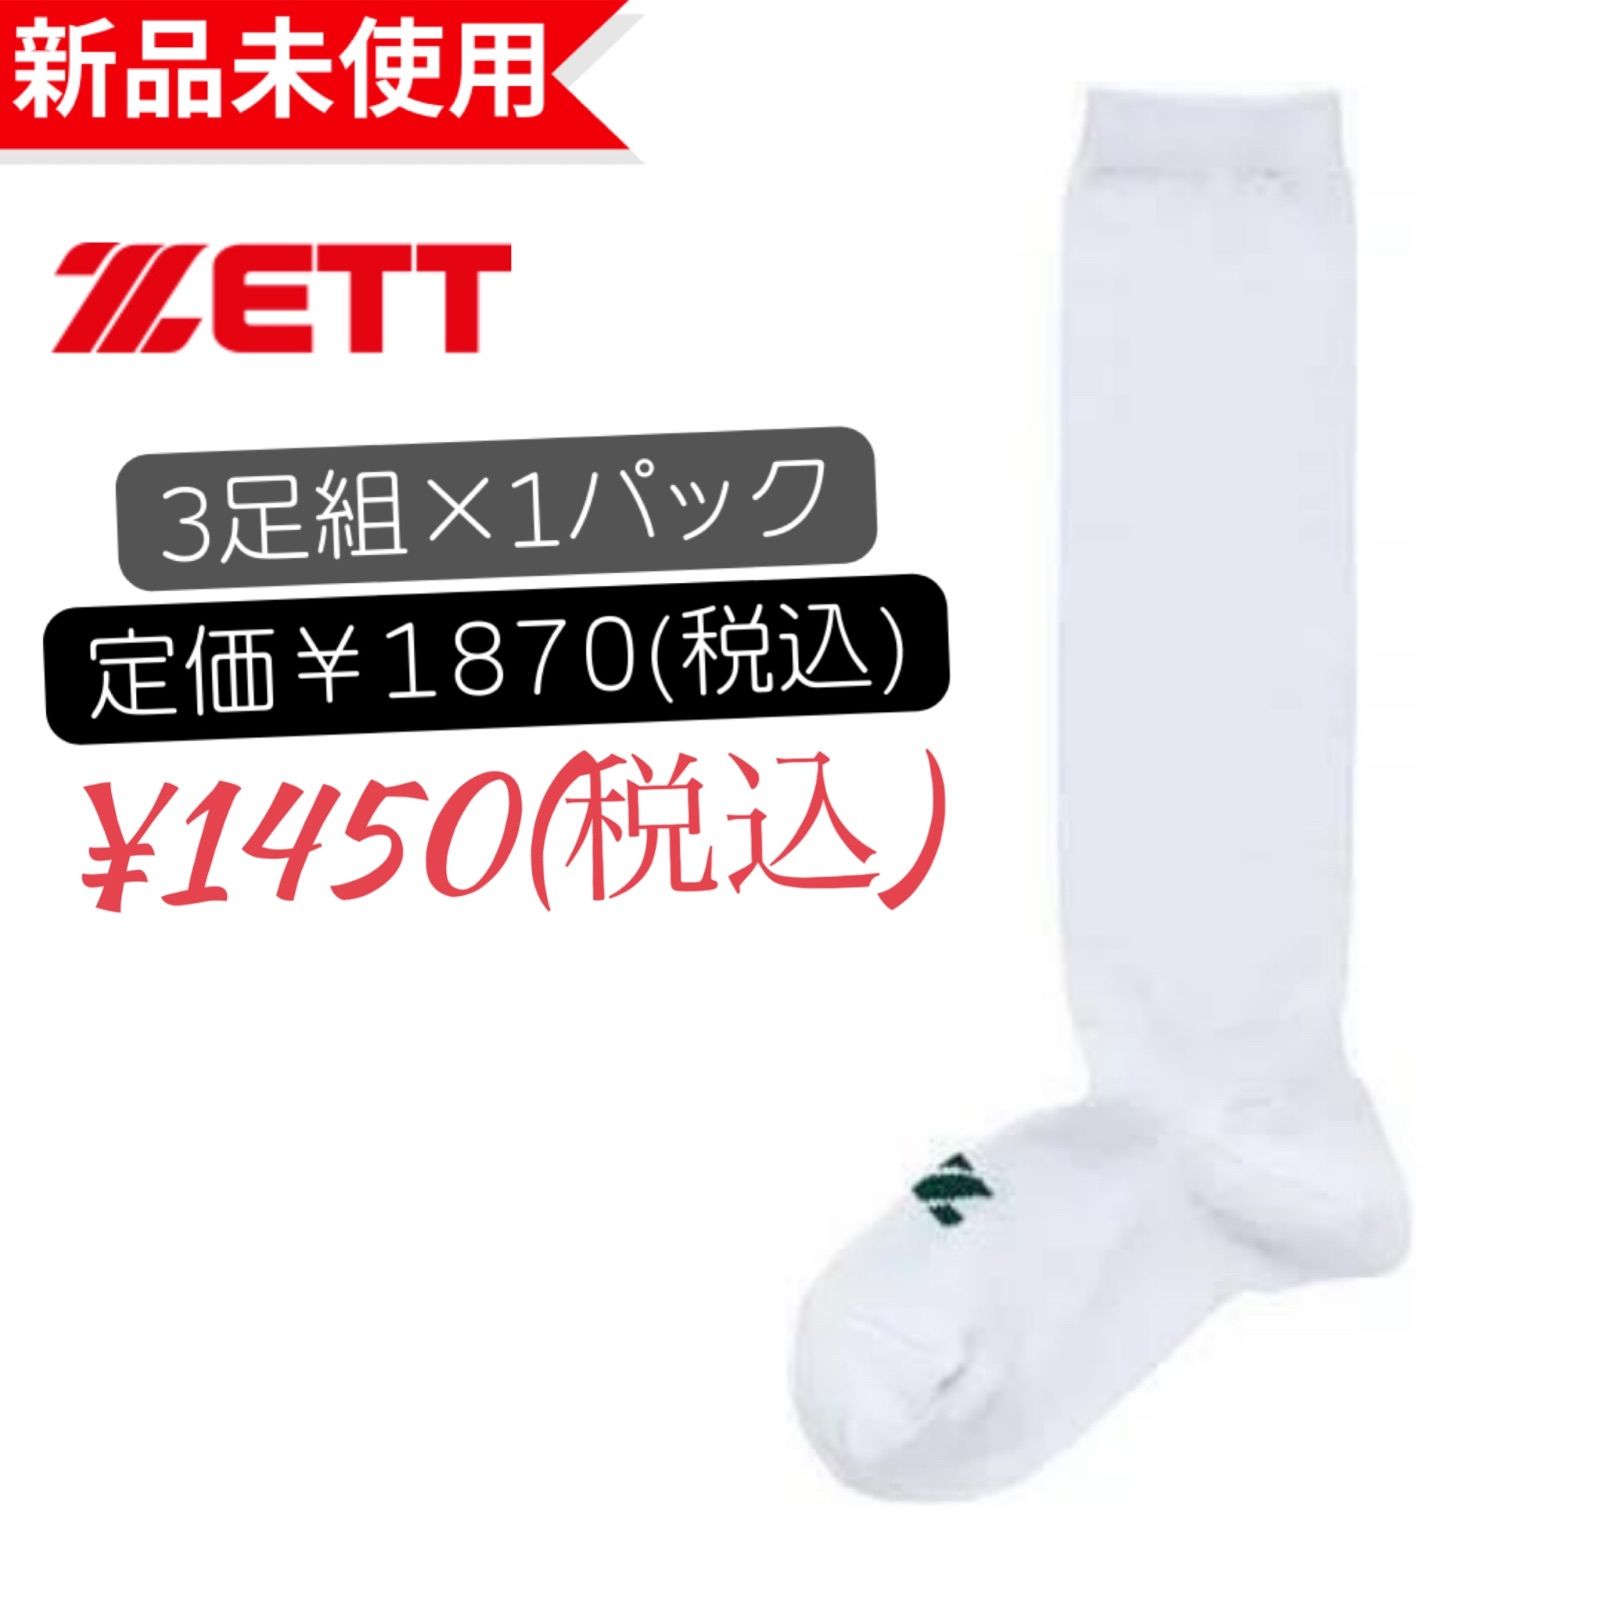 新品未使用 19～21cm 野球ソックス 2足セット ZETT ゼット 青